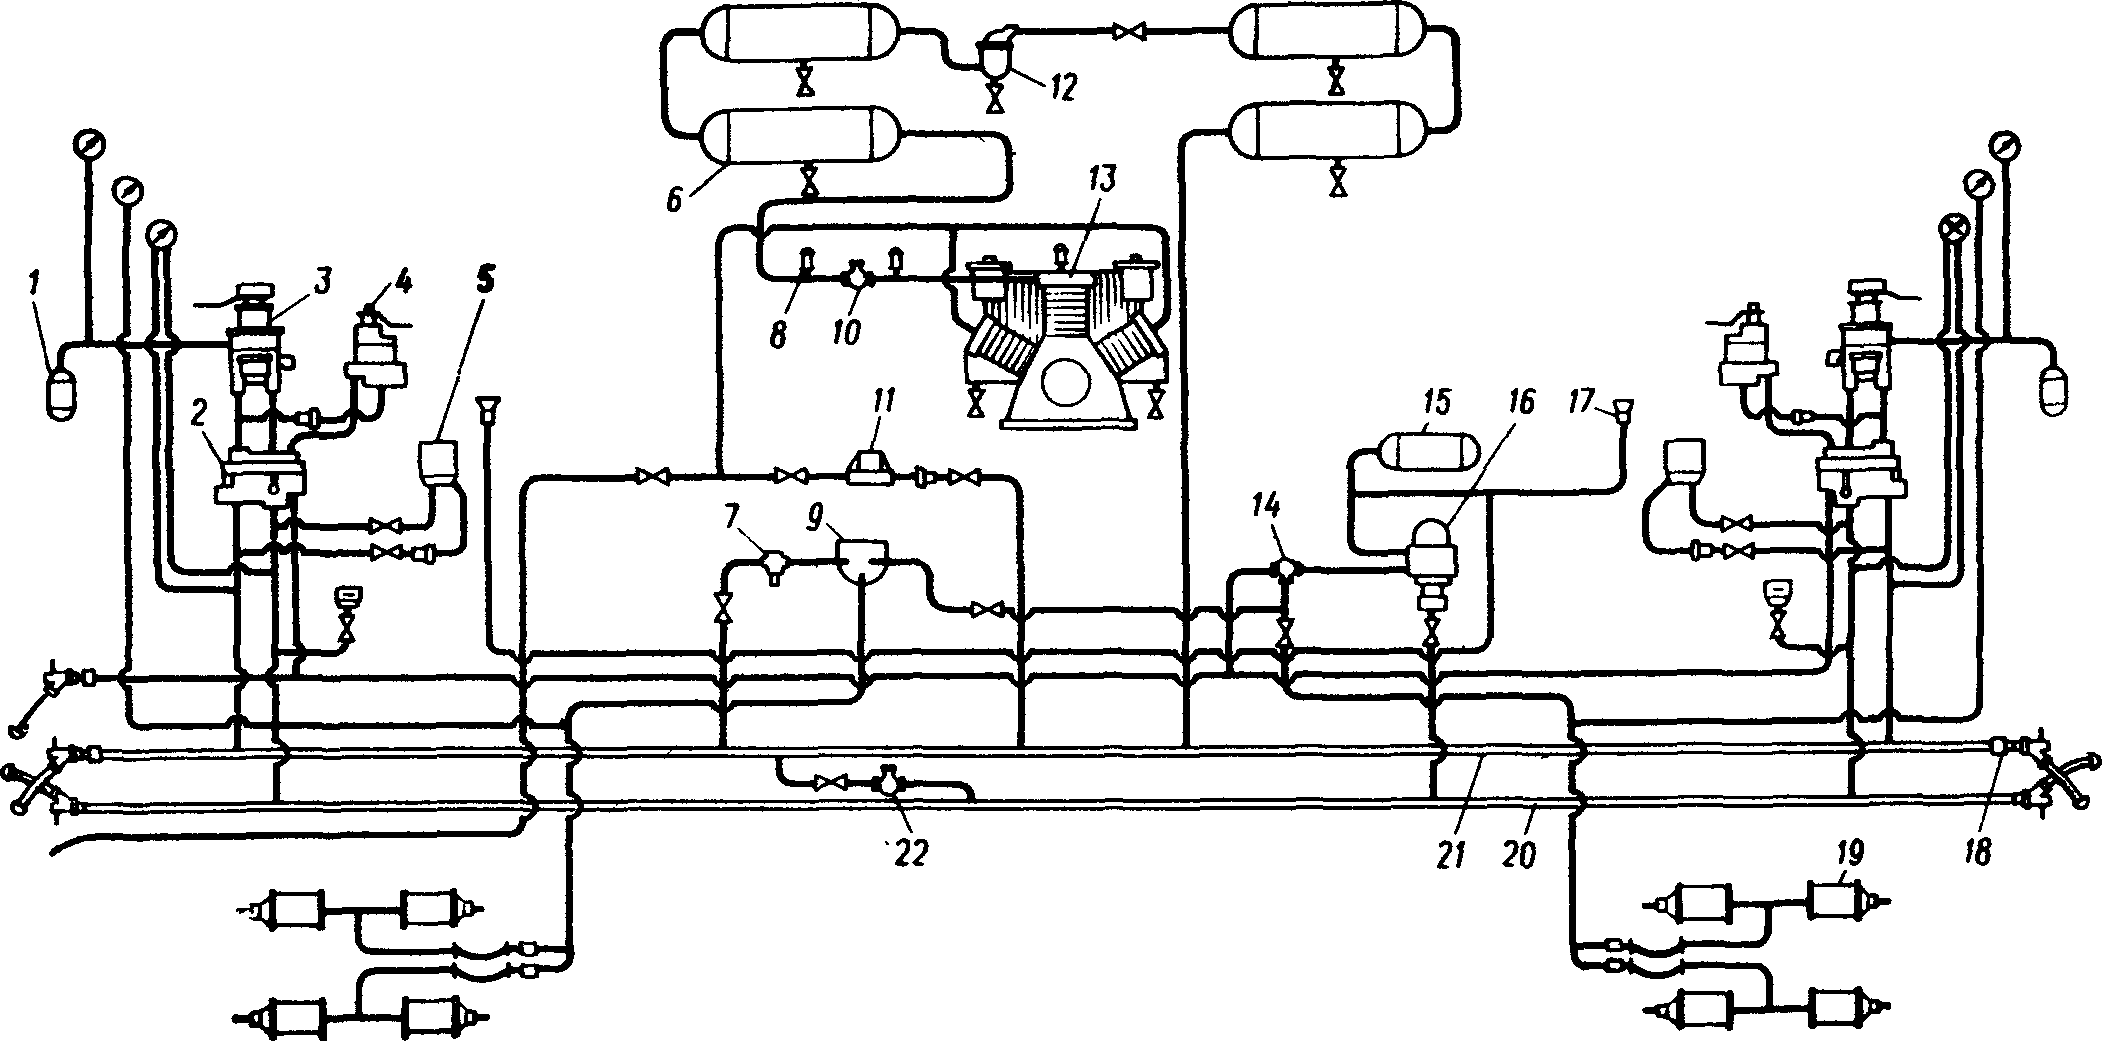 Схема тормозного оборудования тепловоза ТЭП60